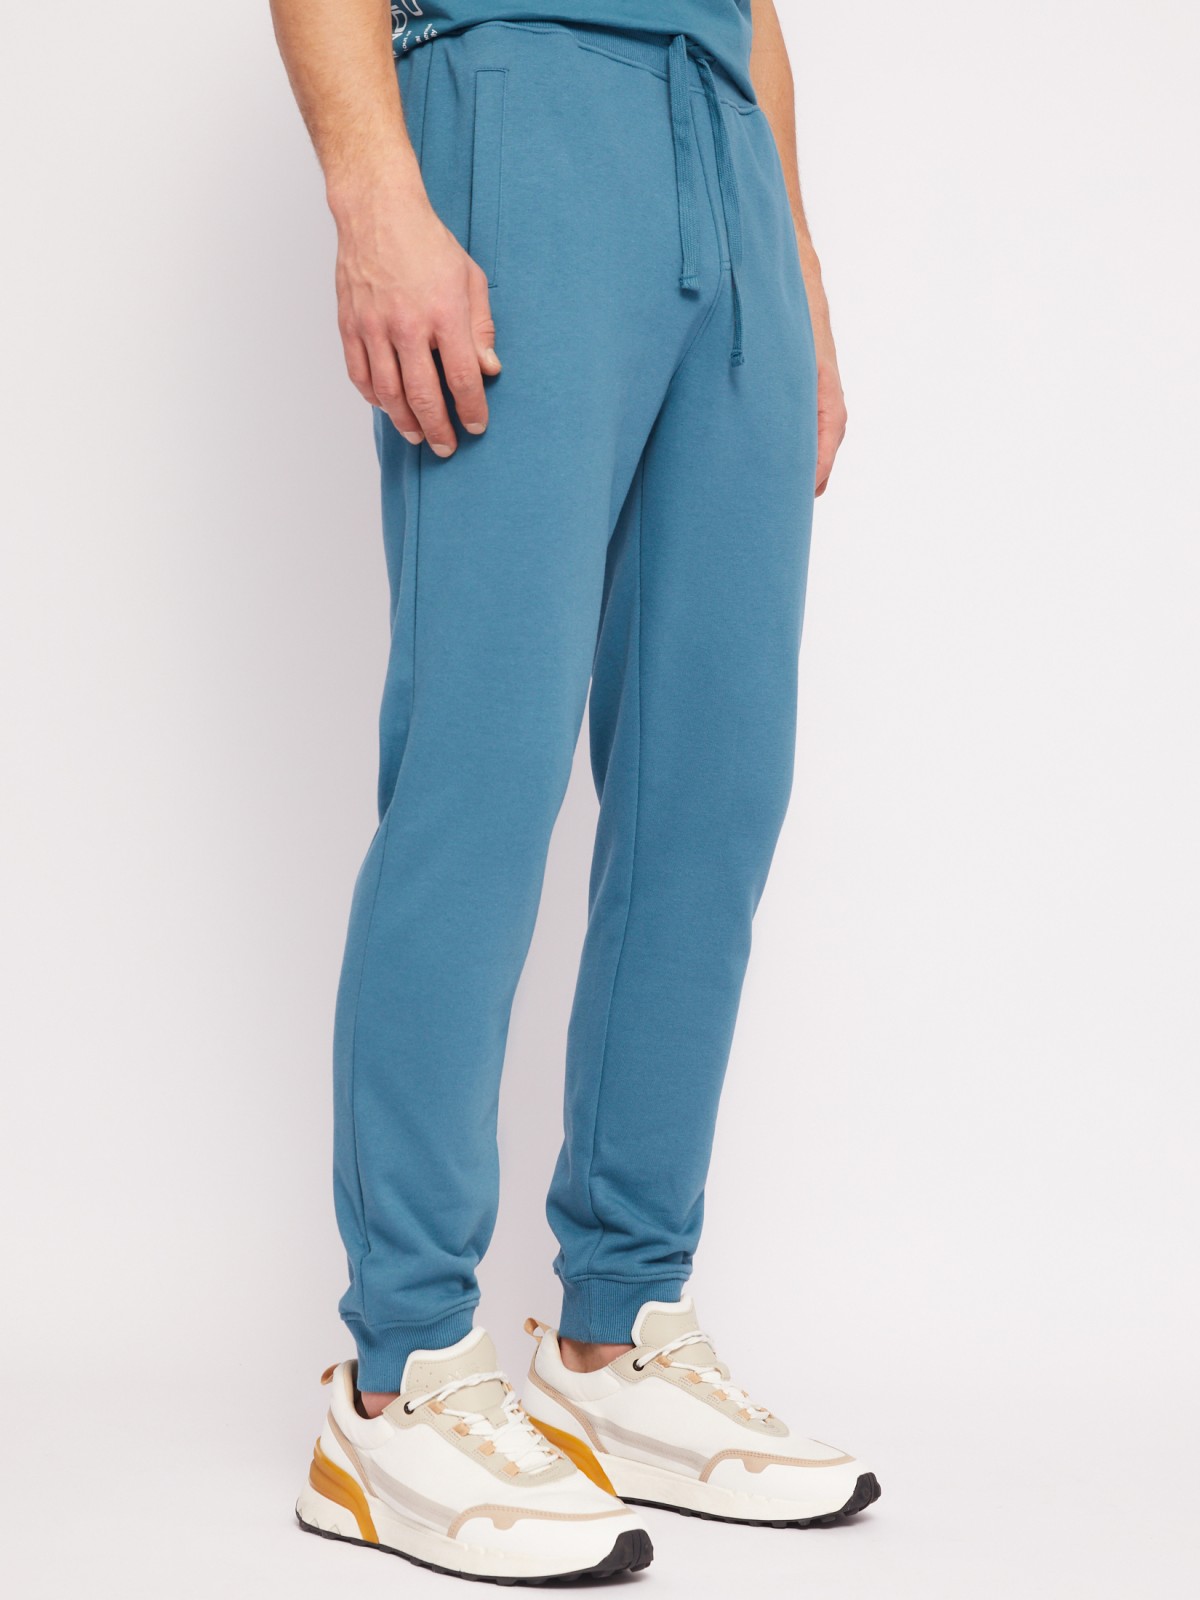 Трикотажные брюки-джоггеры в спортивном стиле zolla 014217675012, цвет бирюзовый, размер S - фото 4